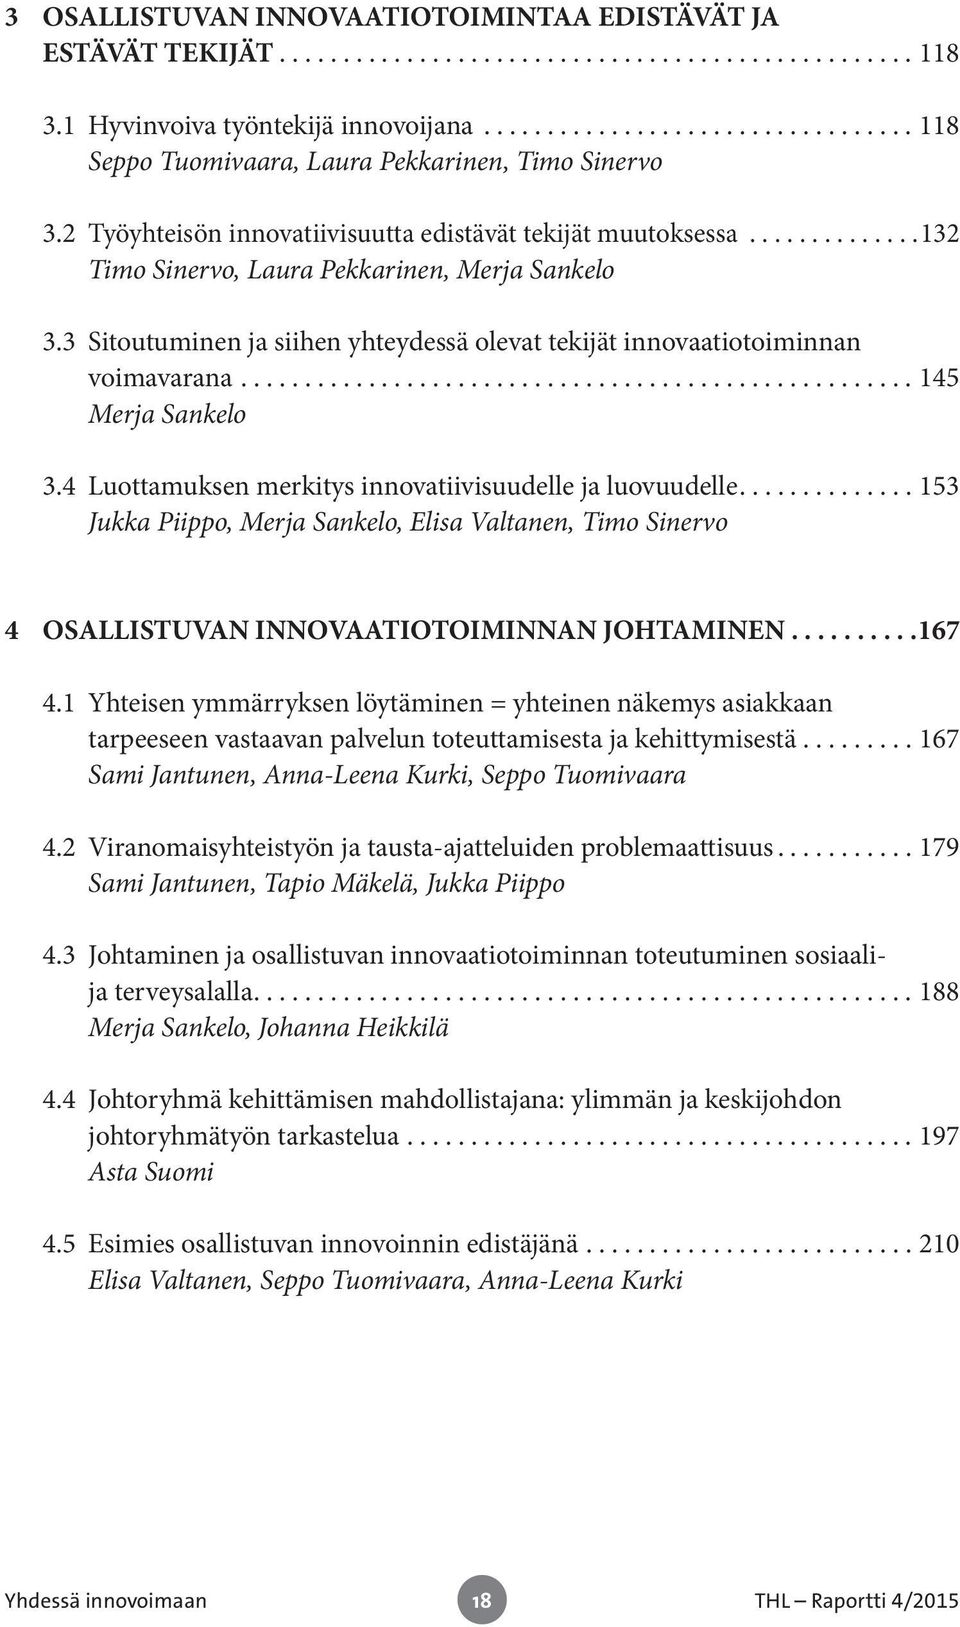 ..145 Merja Sankelo 3.4 Luottamuksen merkitys innovatiivisuudelle ja luovuudelle....153 Jukka Piippo, Merja Sankelo, Elisa Valtanen, Timo Sinervo 4 OSALLISTUVAN INNOVAATIOTOIMINNAN JOHTAMINEN... 167 4.